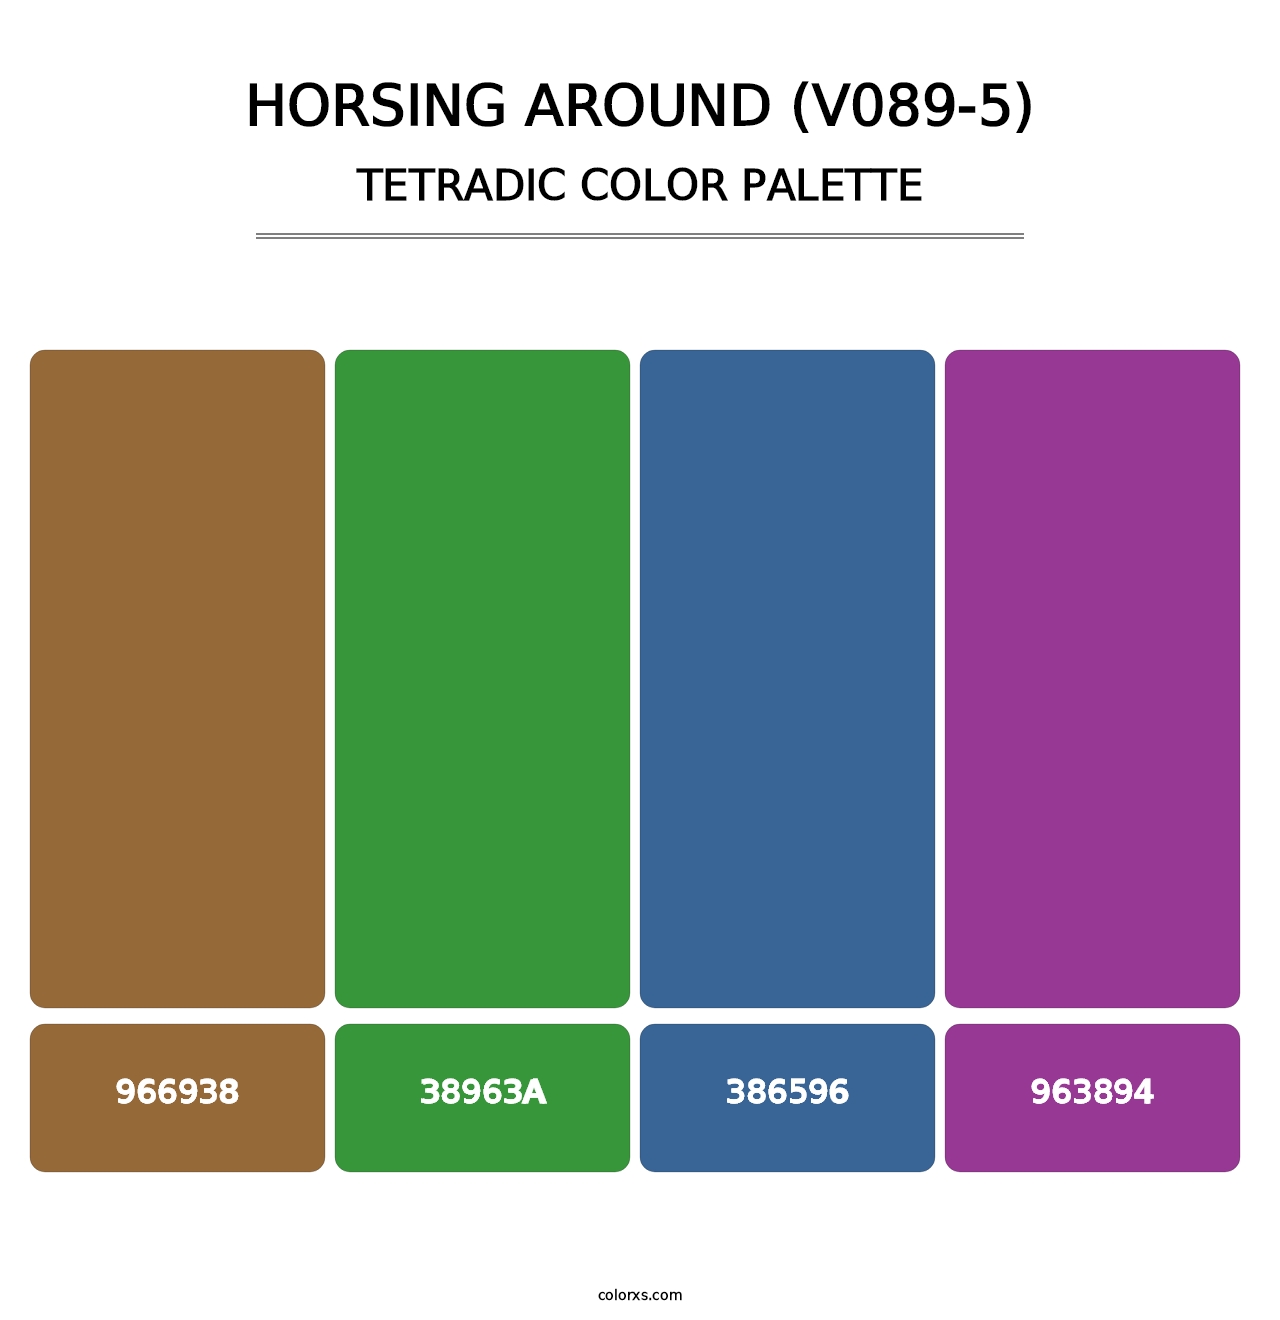 Horsing Around (V089-5) - Tetradic Color Palette